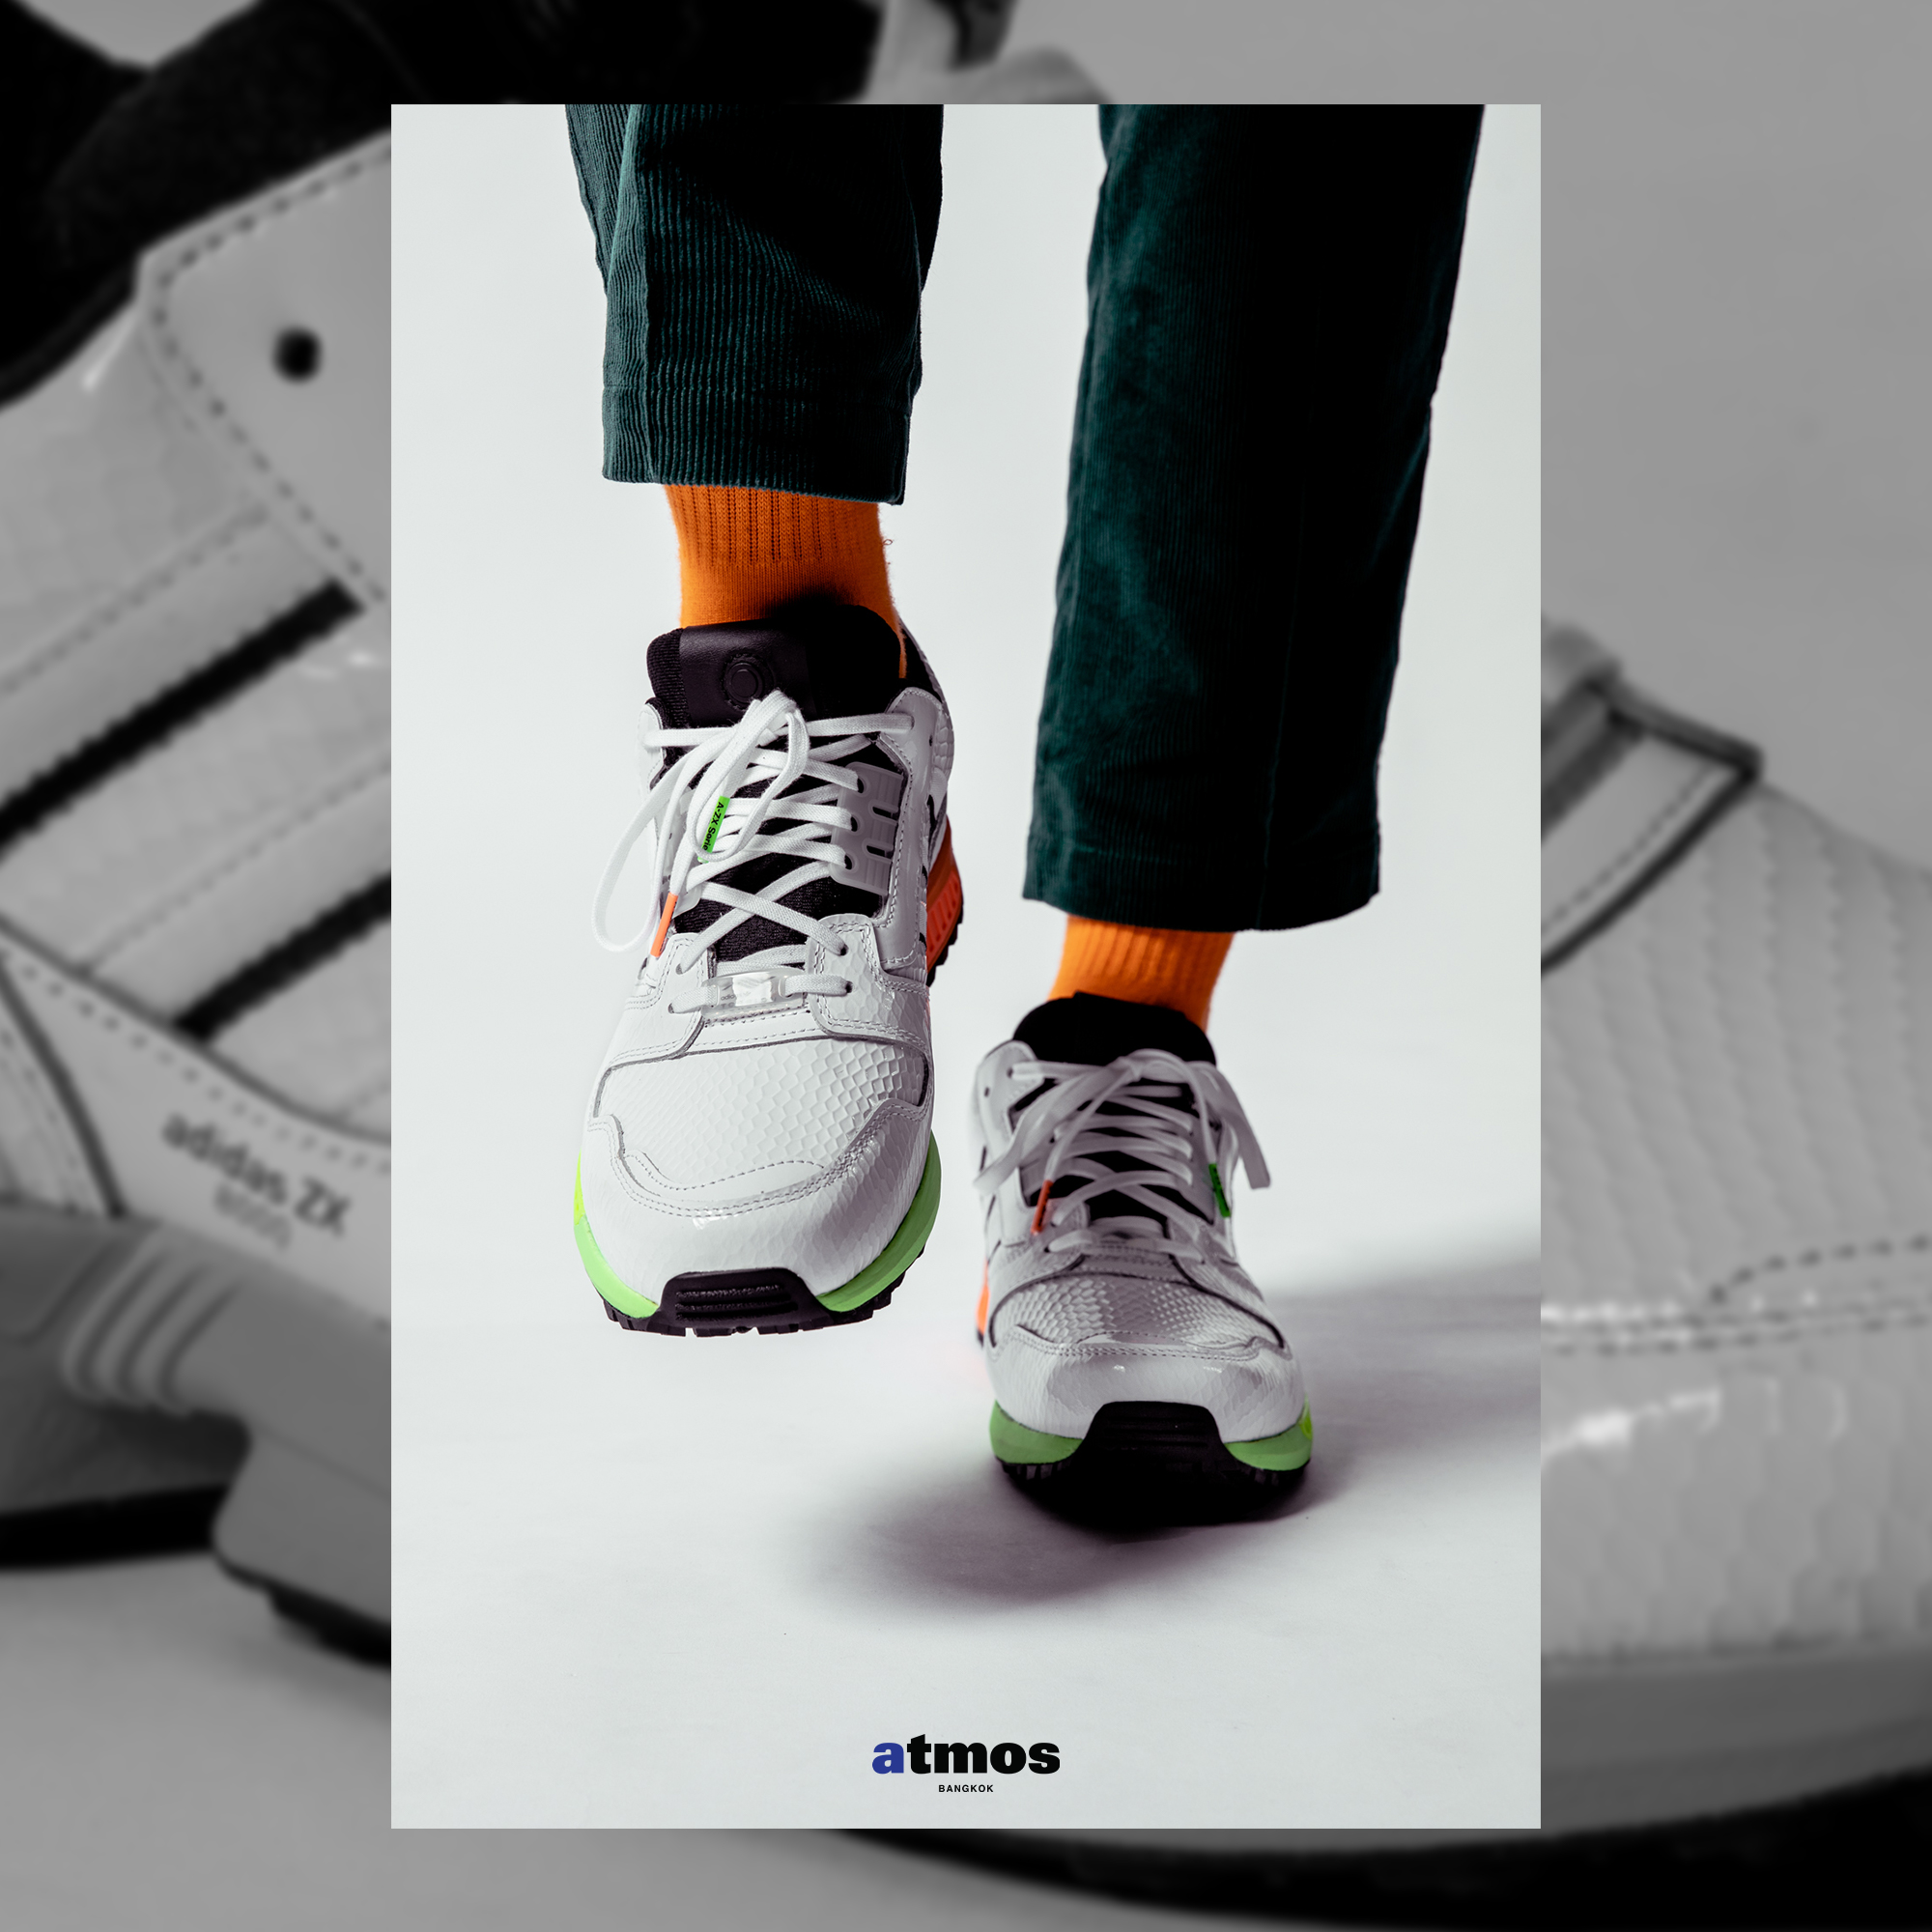 แนะนำ adidas  ZX 8000 SG “GOLF” รองเท้าเล่นกอล์ฟที่ถูกดัดแปลงมาจากรองเท้าวิ่งในตำนาน